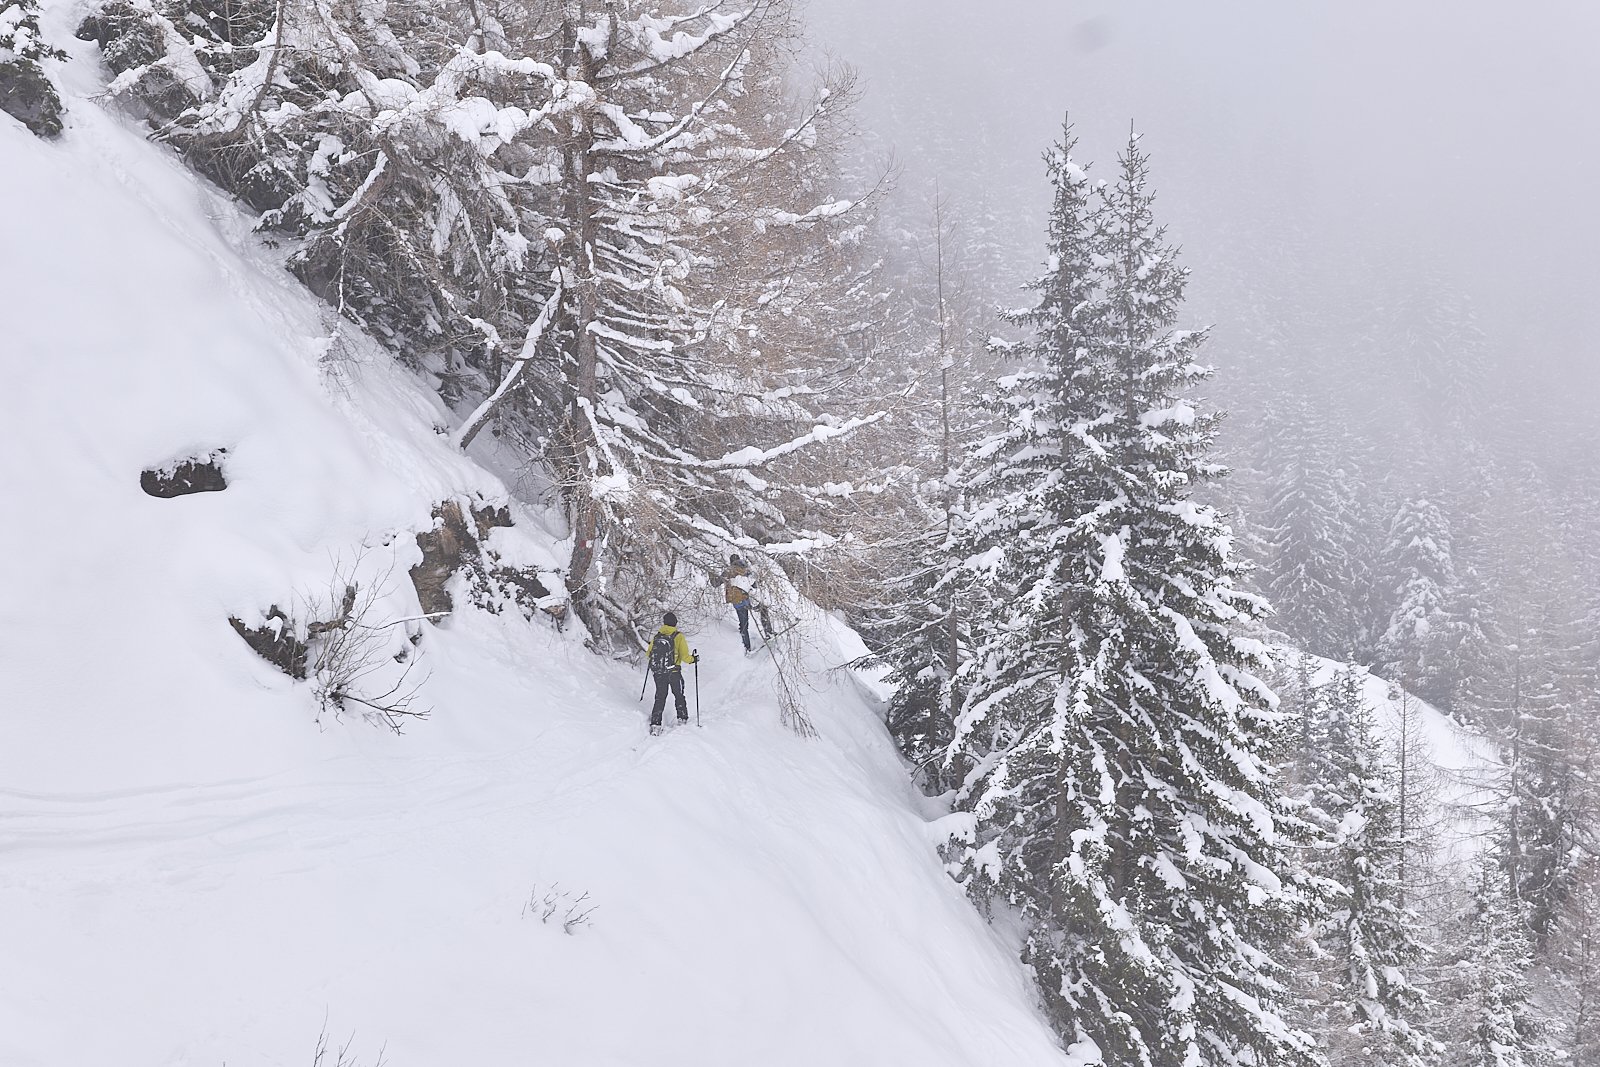 Waldabfahrt – Achtung dies ist keine Skitourenroute